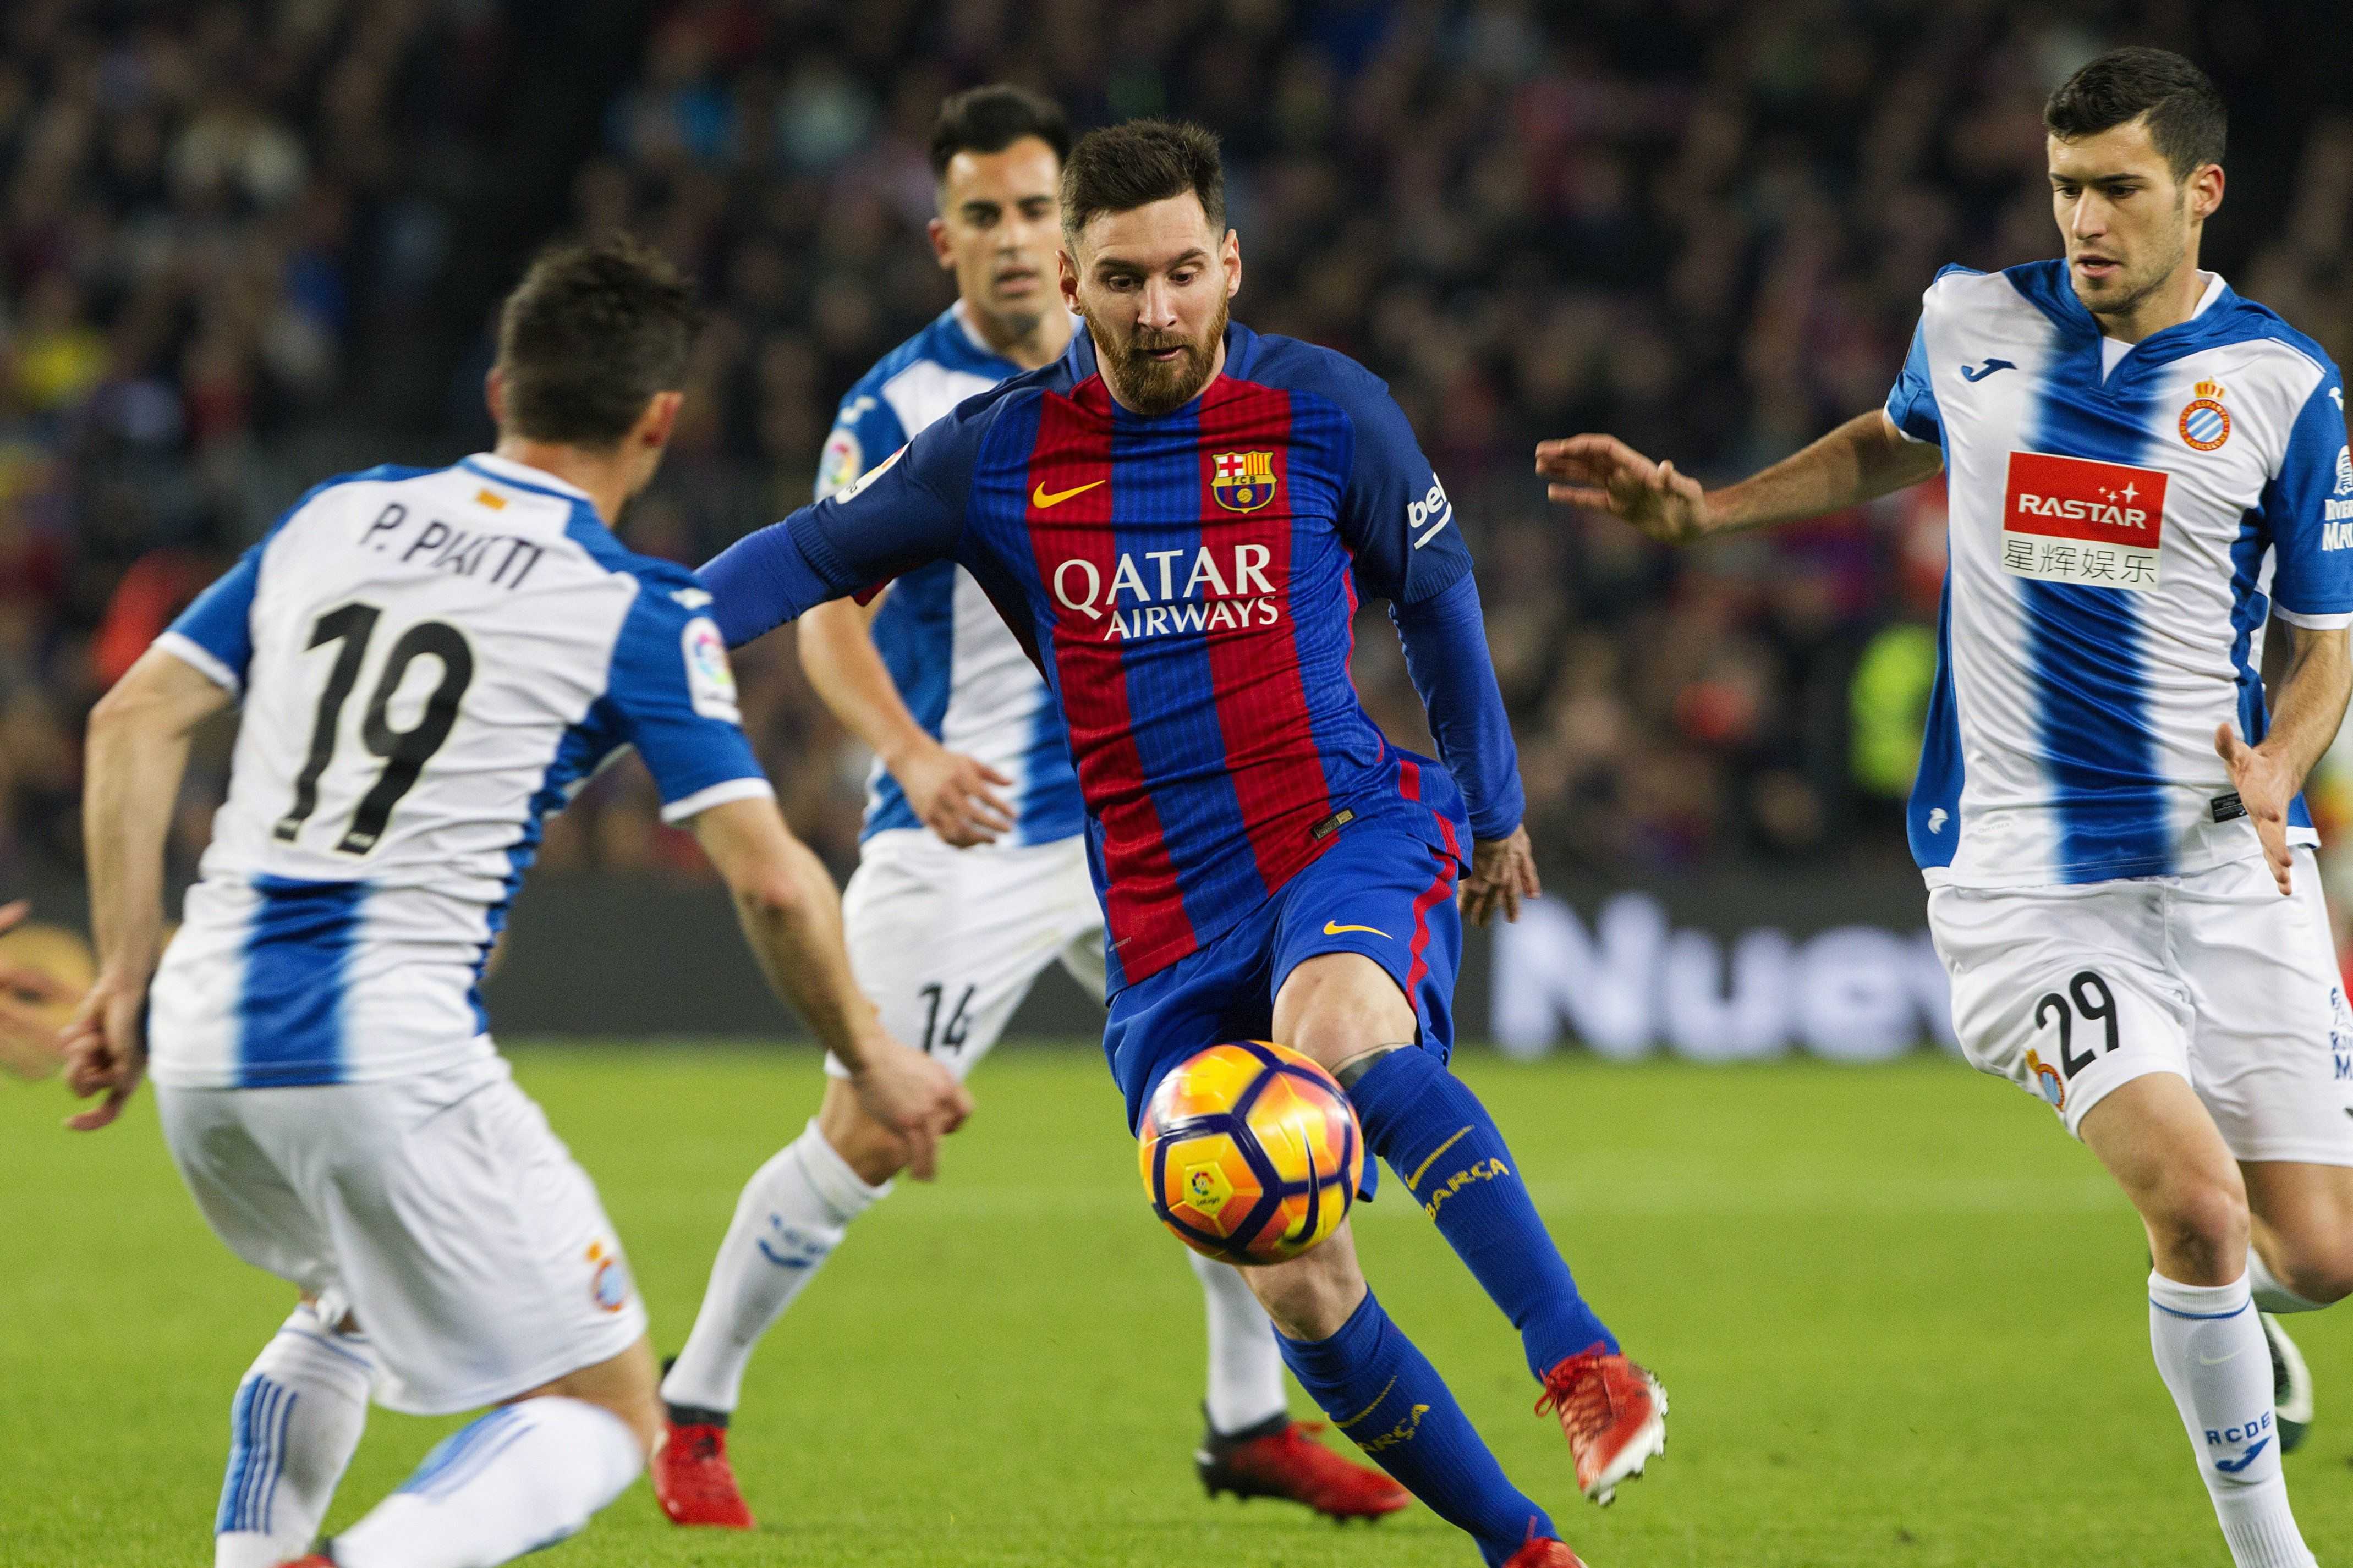 La jugada de Messi contra l'Espanyol, des de tots els angles